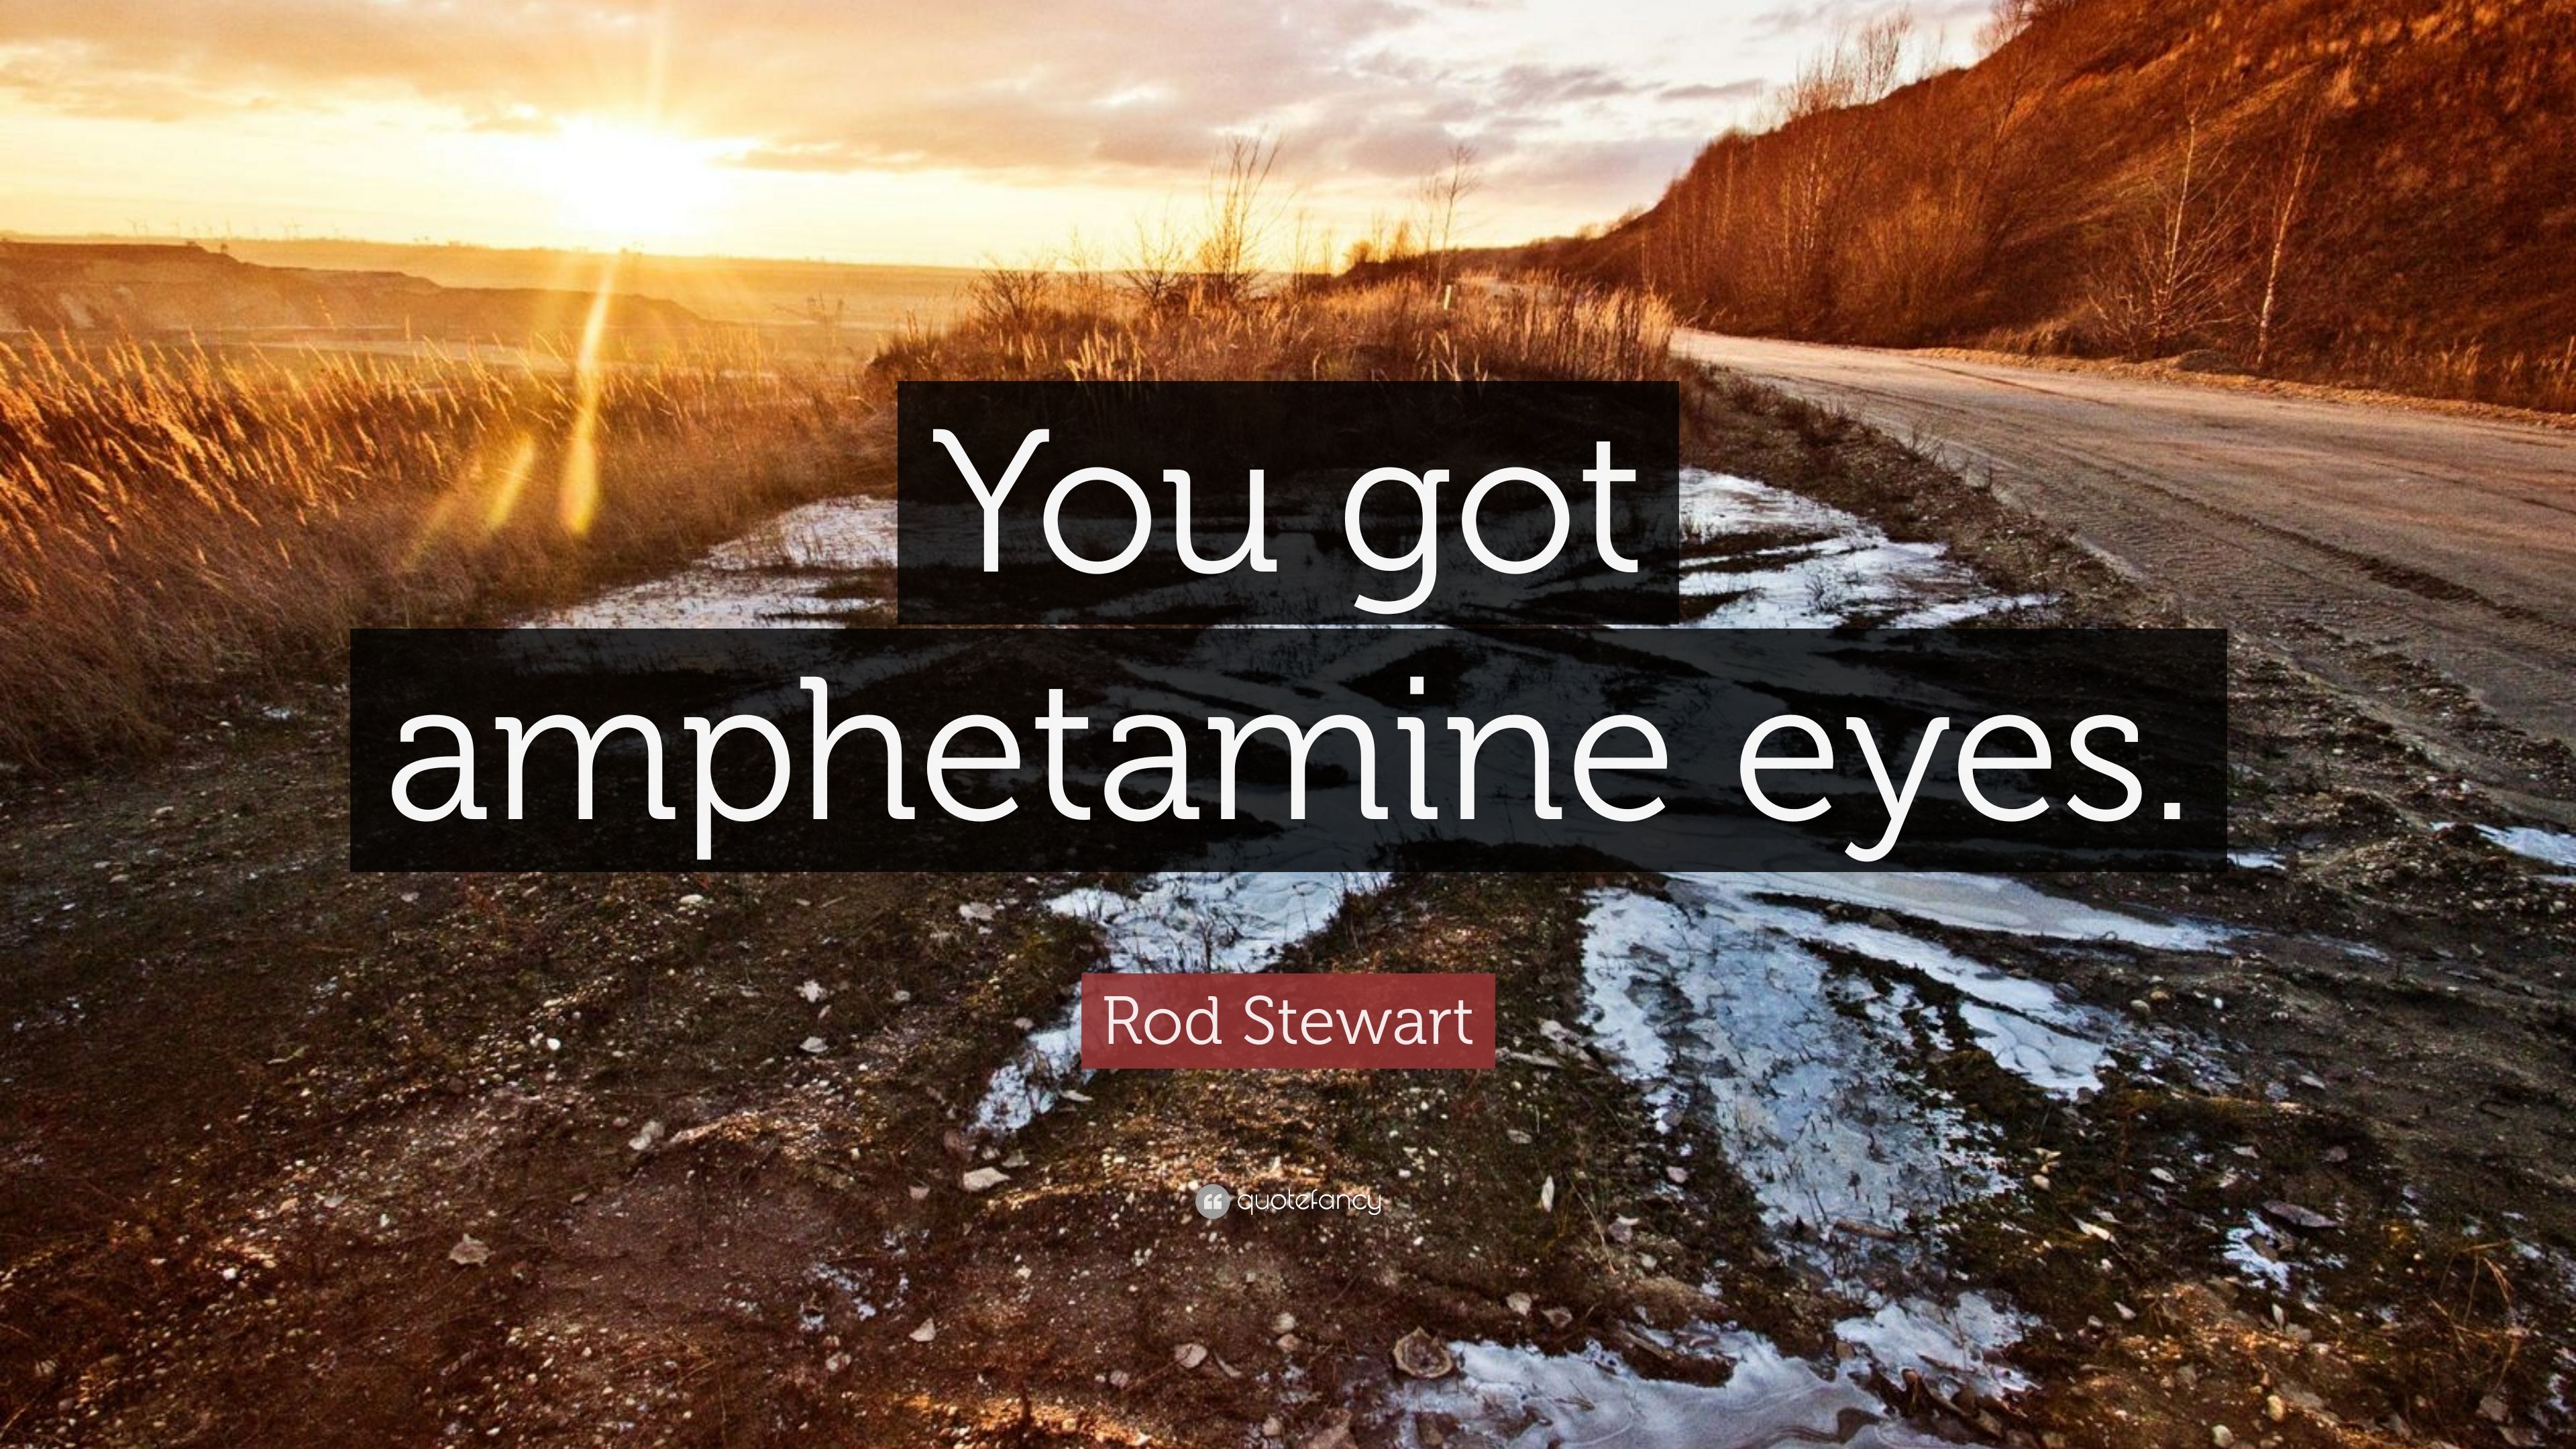 Rod Stewart Quote: “You got amphetamine eyes.” 7 wallpaper